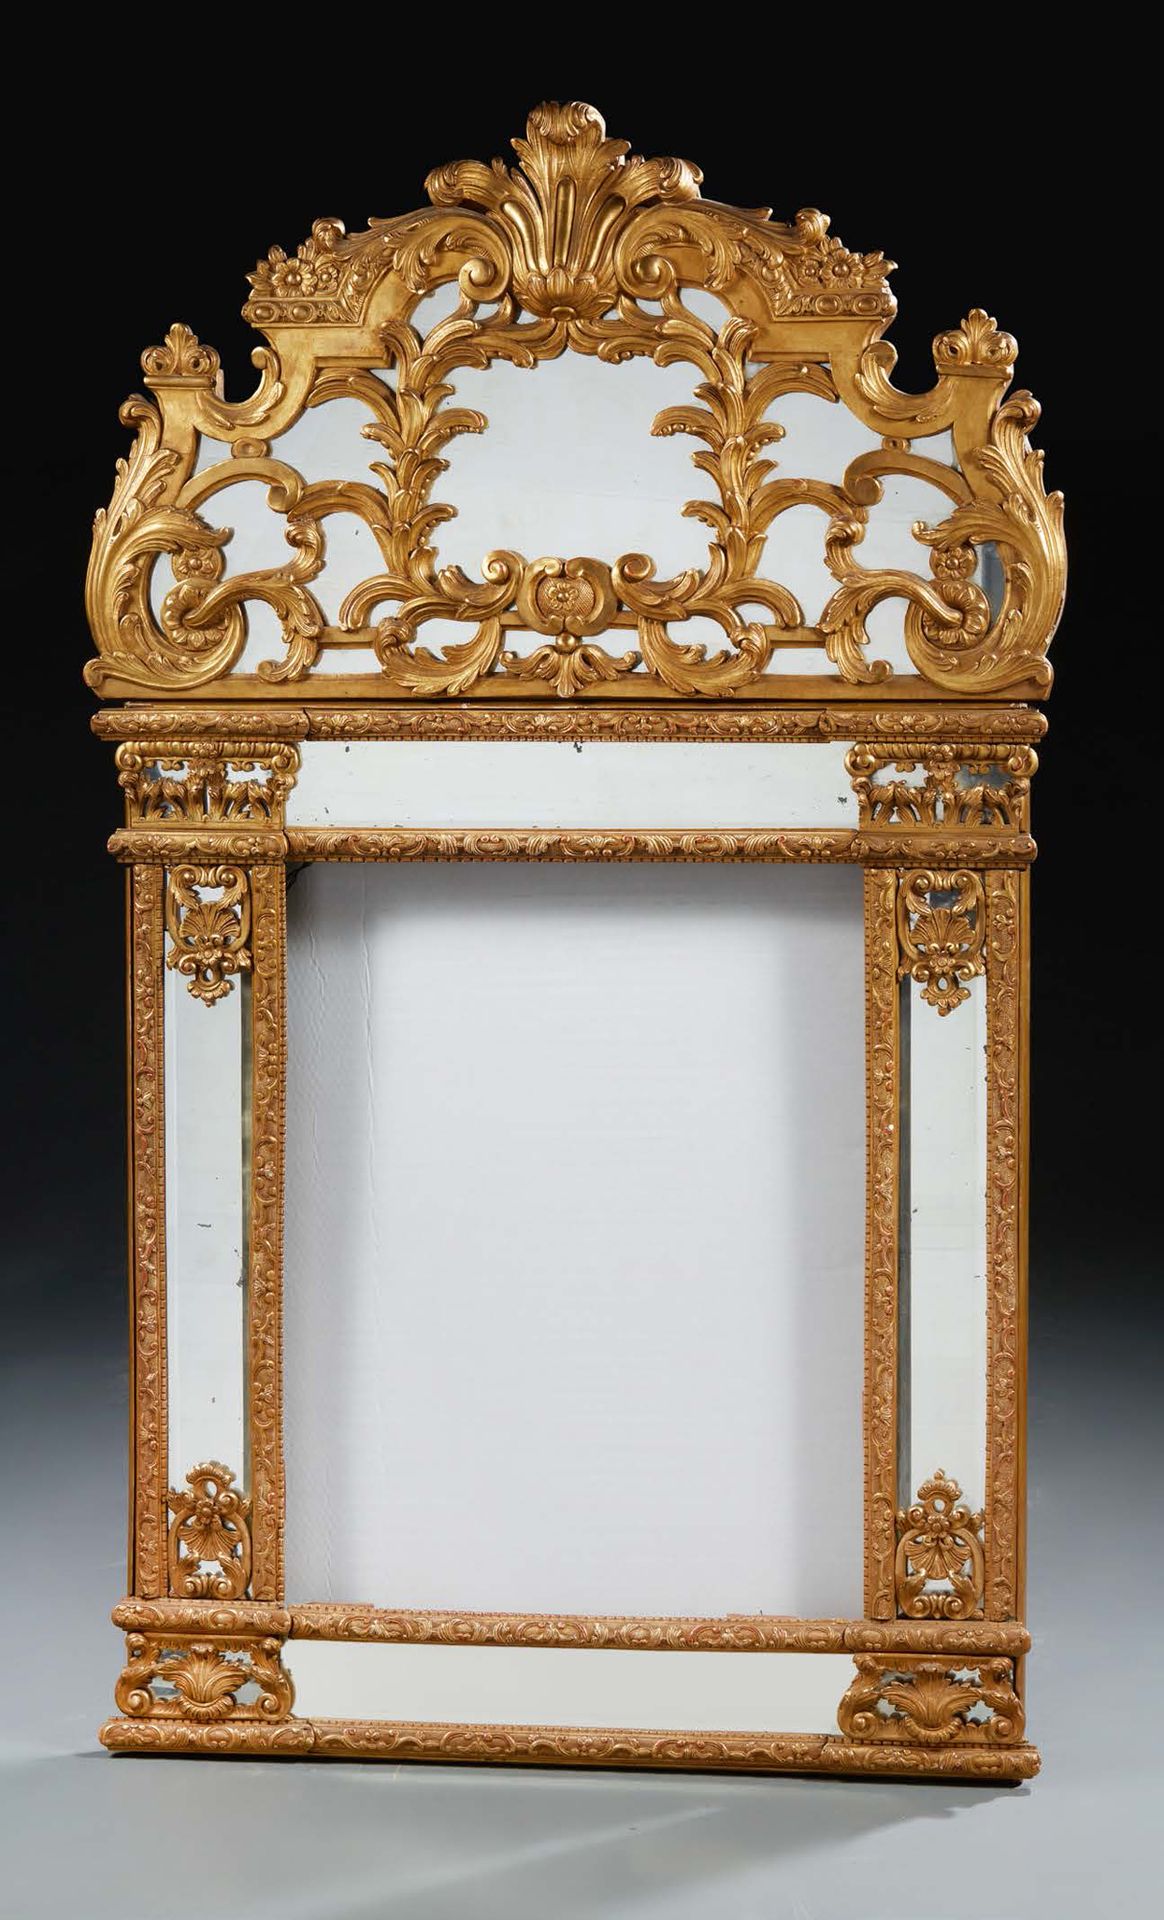 Null 木制和镀金的灰泥镜子。
缺少中央的镜子。
19世纪末。
凹陷：142 x 83cm
 （小事故）。